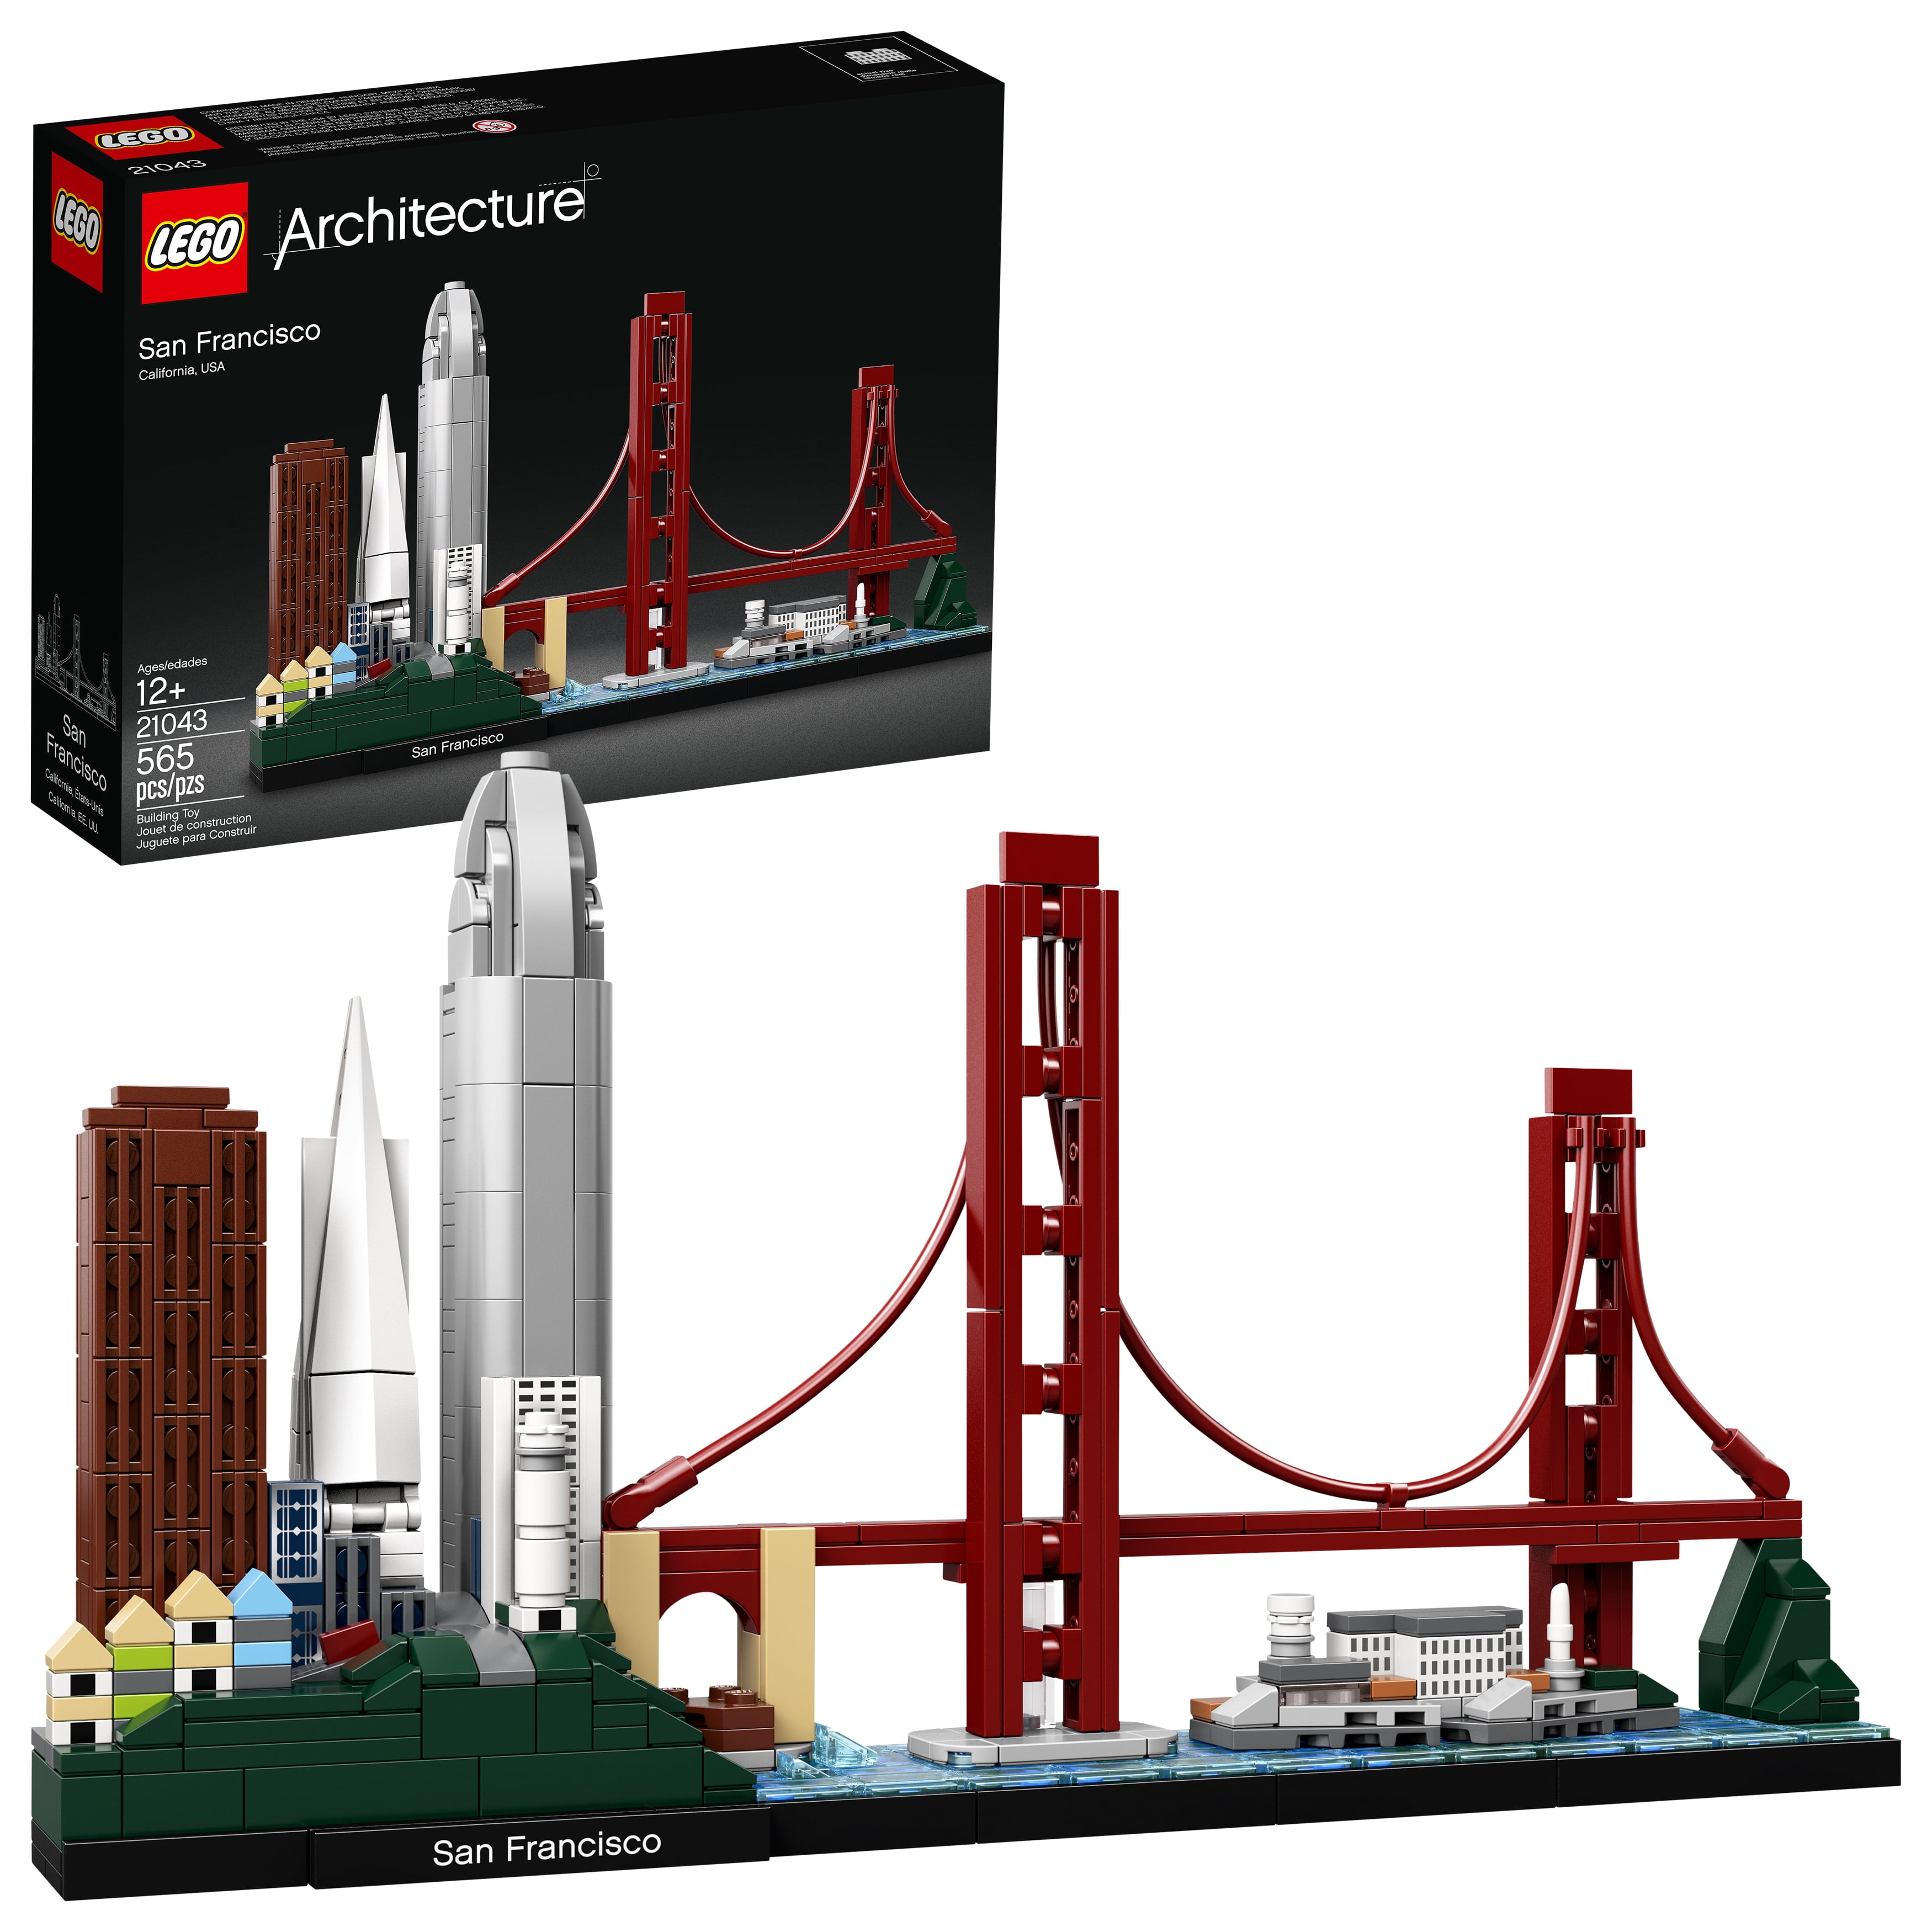 LEGO Architecture Paris 21044 Stock in Hand Australia Brand New in Box 